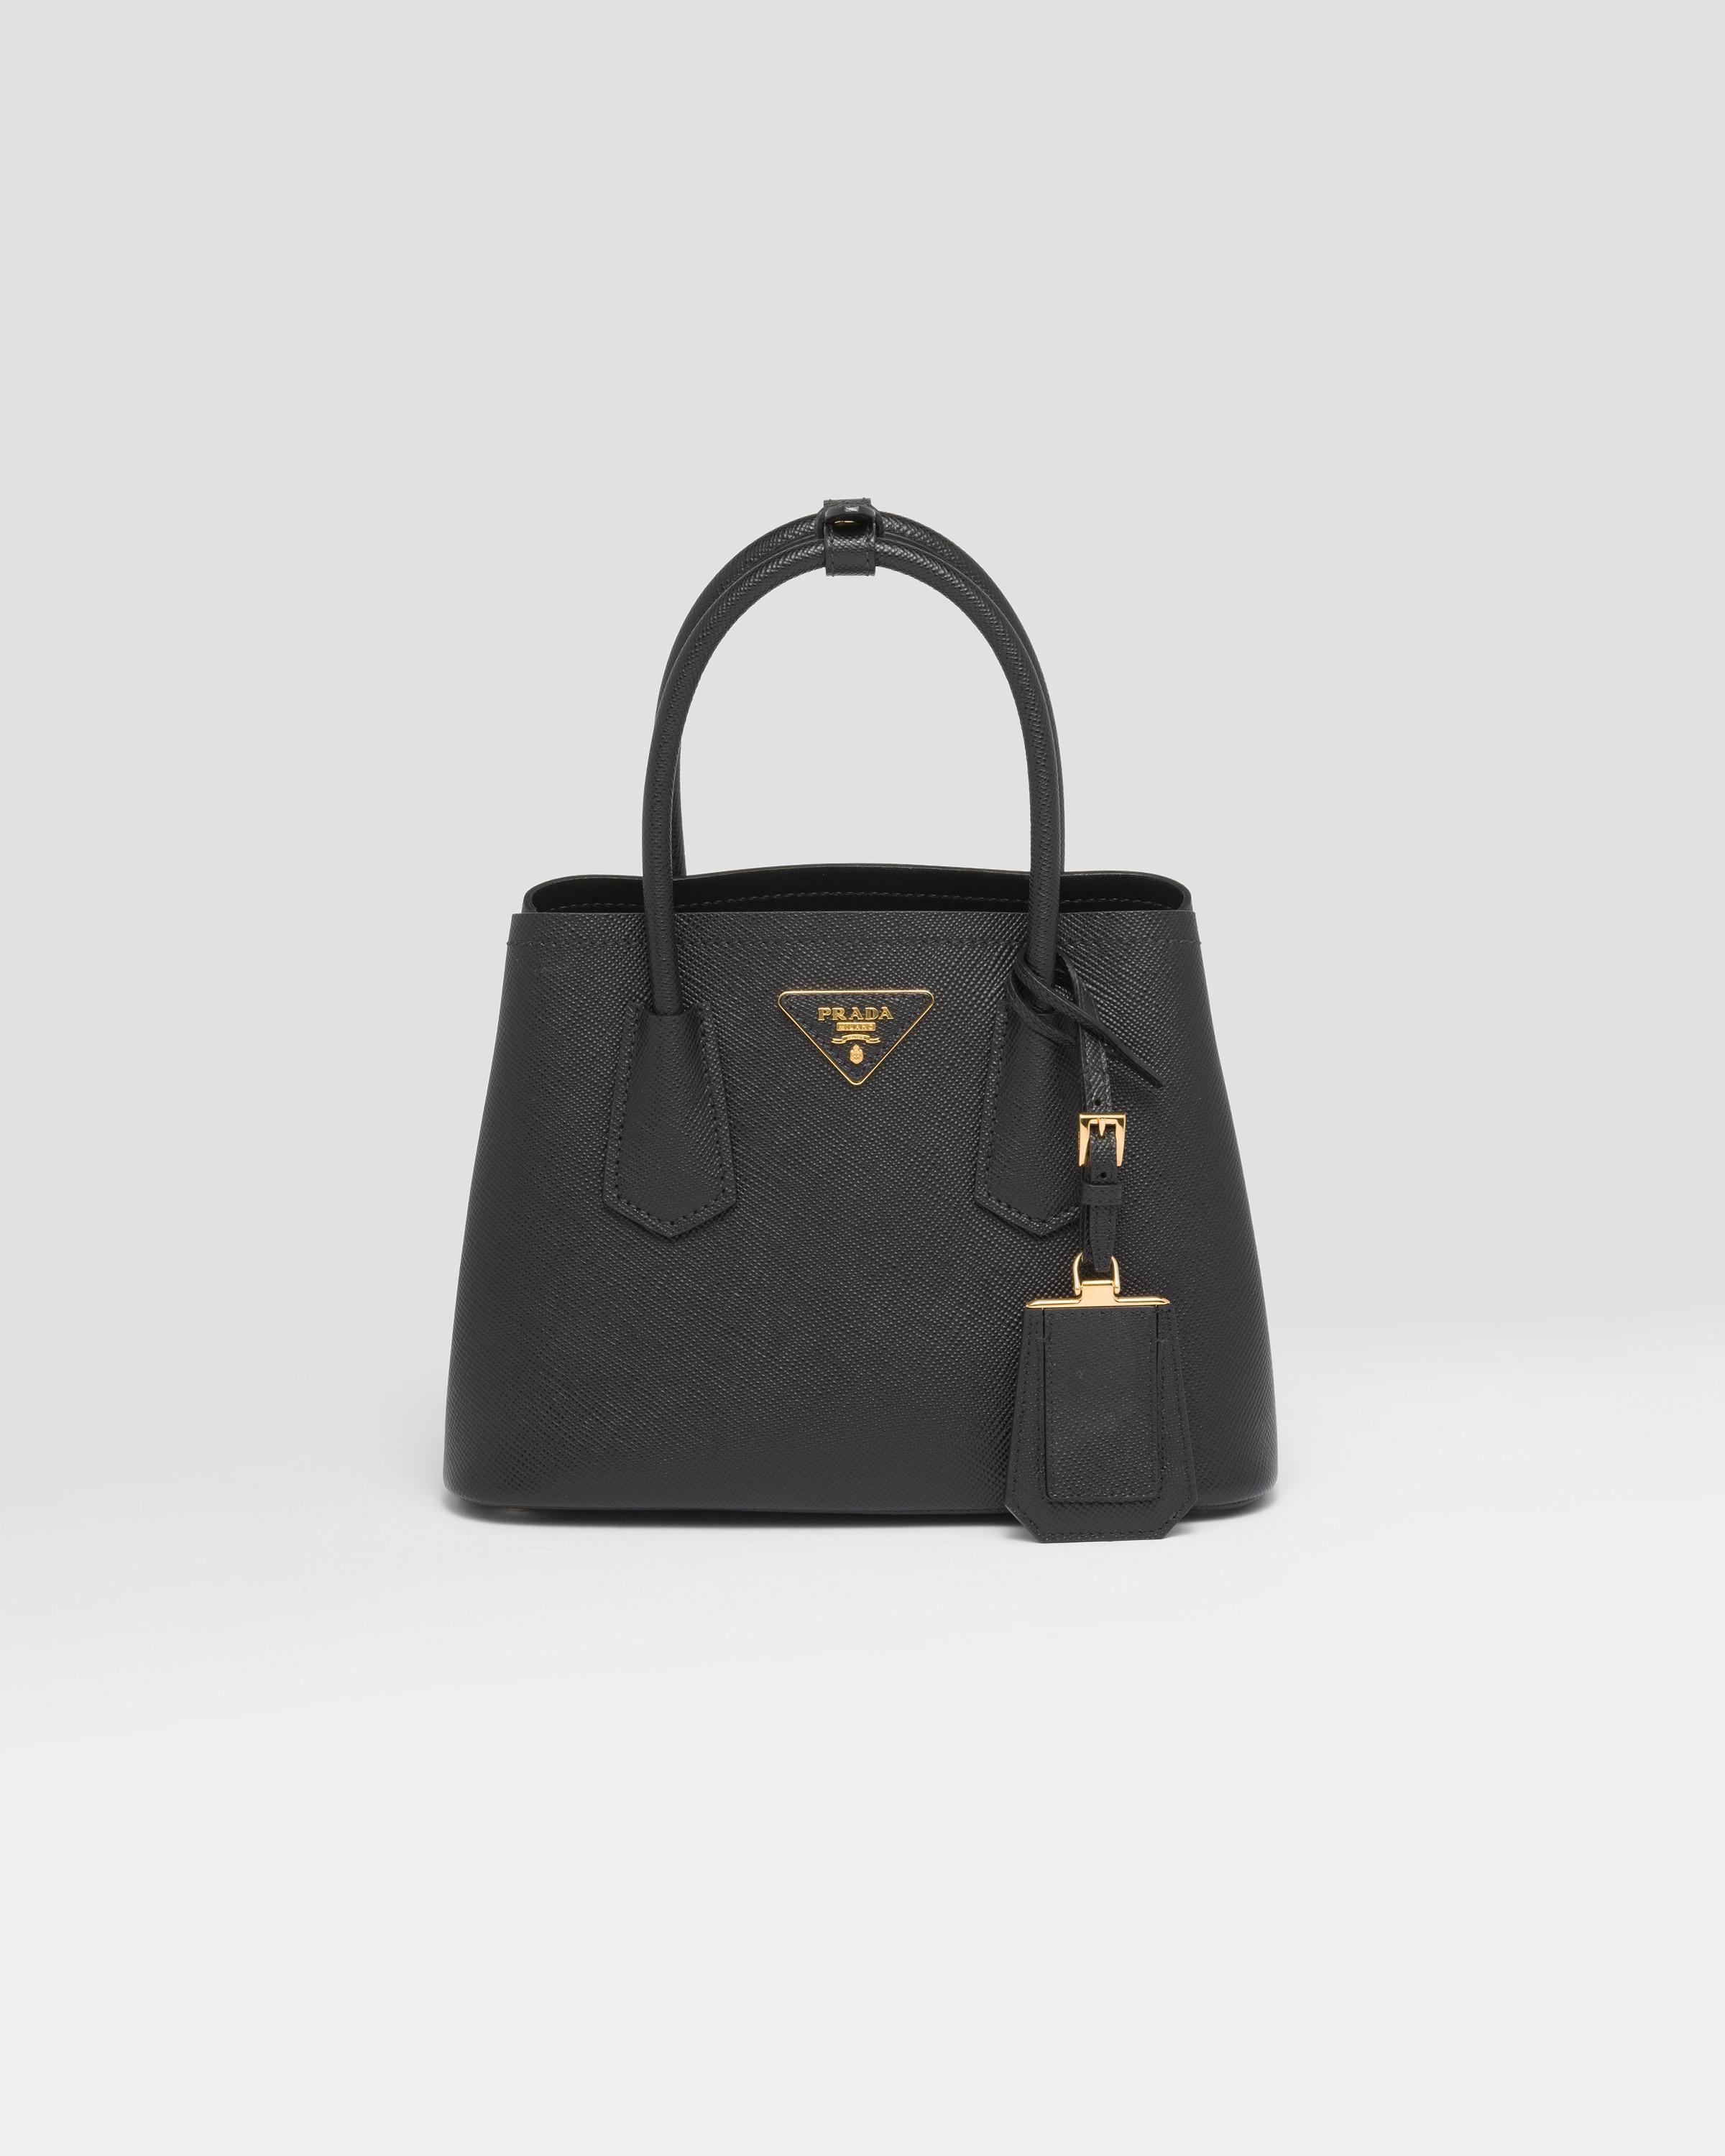 Prada Double Saffiano Leather Mini Bag in Black | Lyst